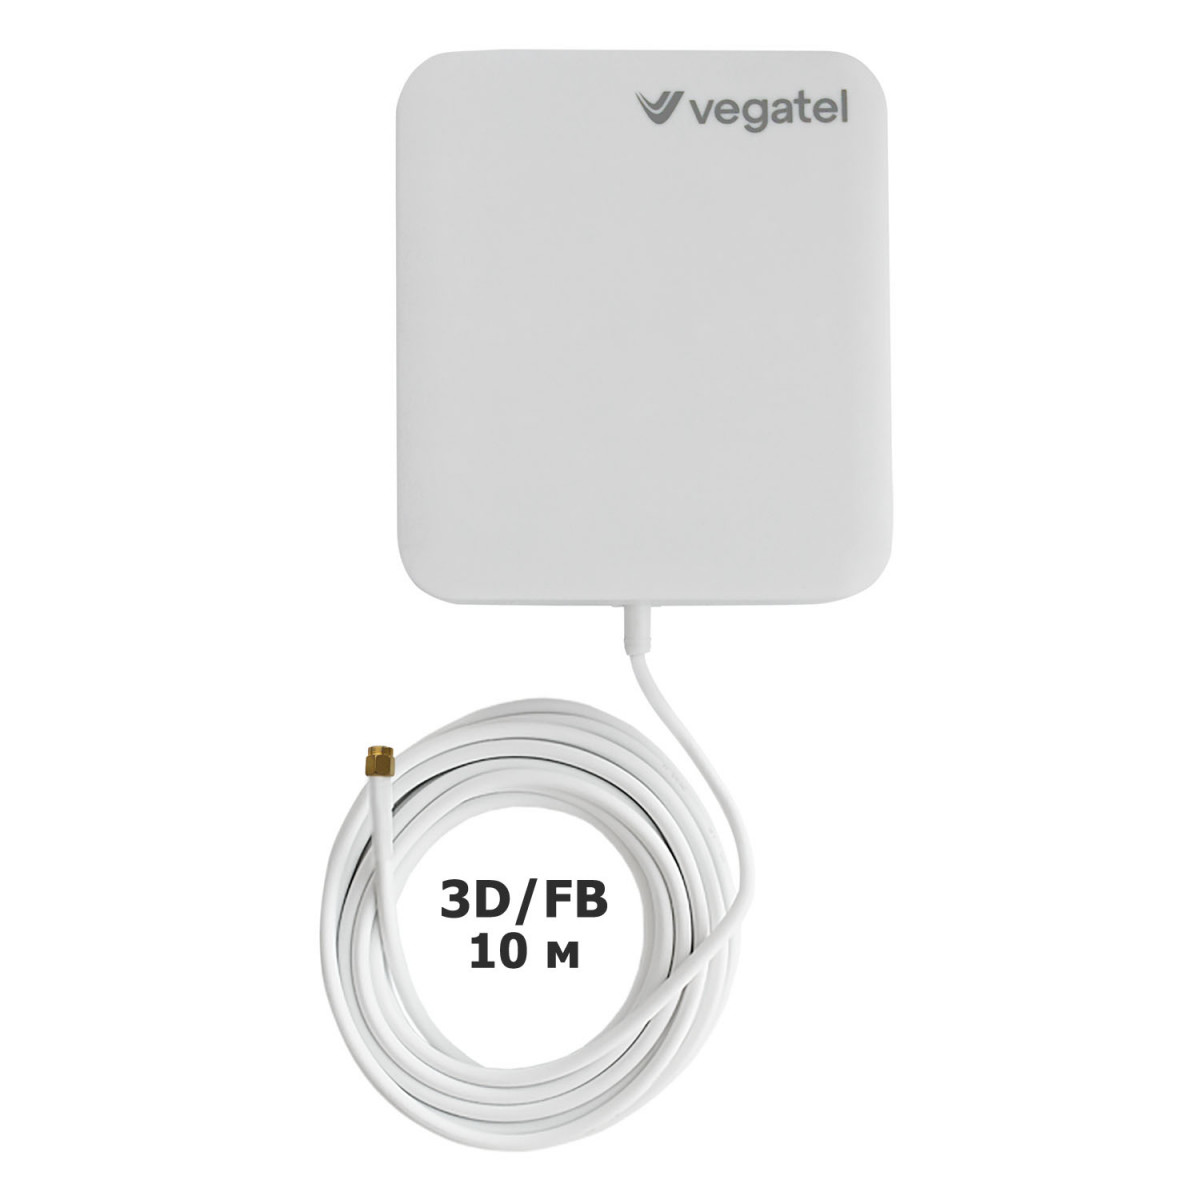 Детальное изображение товара "Комплект усиления сотовой связи Vegatel PL-1800" из каталога оборудования Антенна76